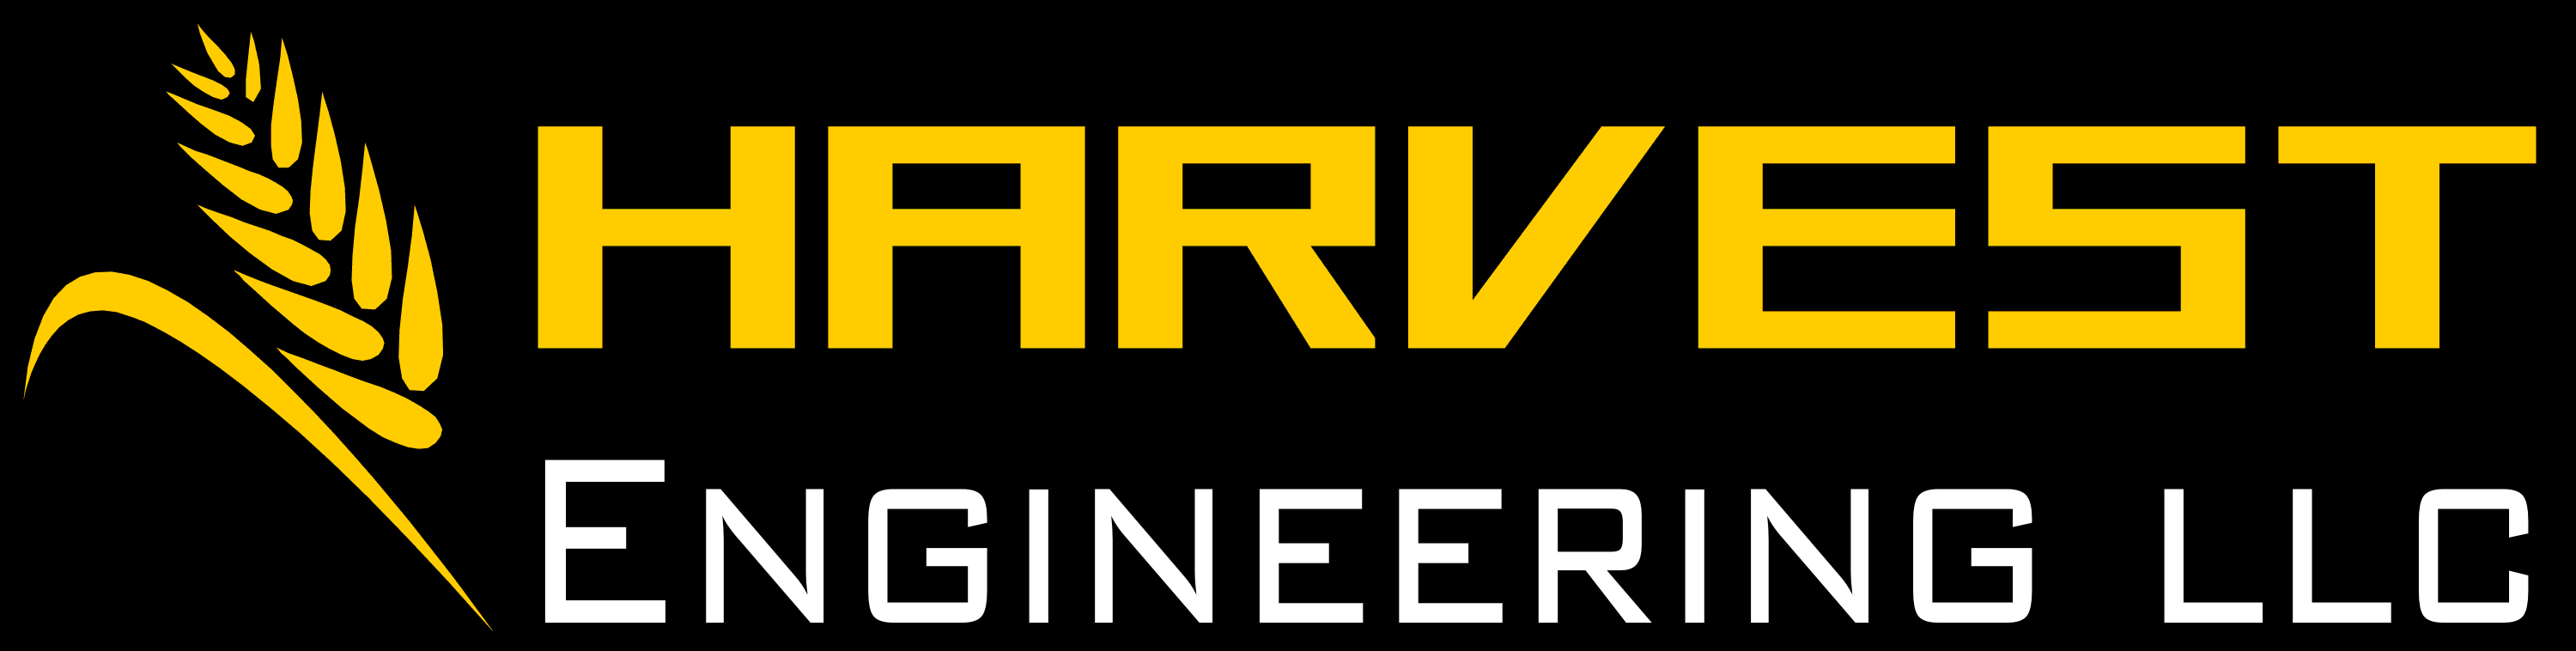 Harvest Engineering LLC. Masterhead Logo